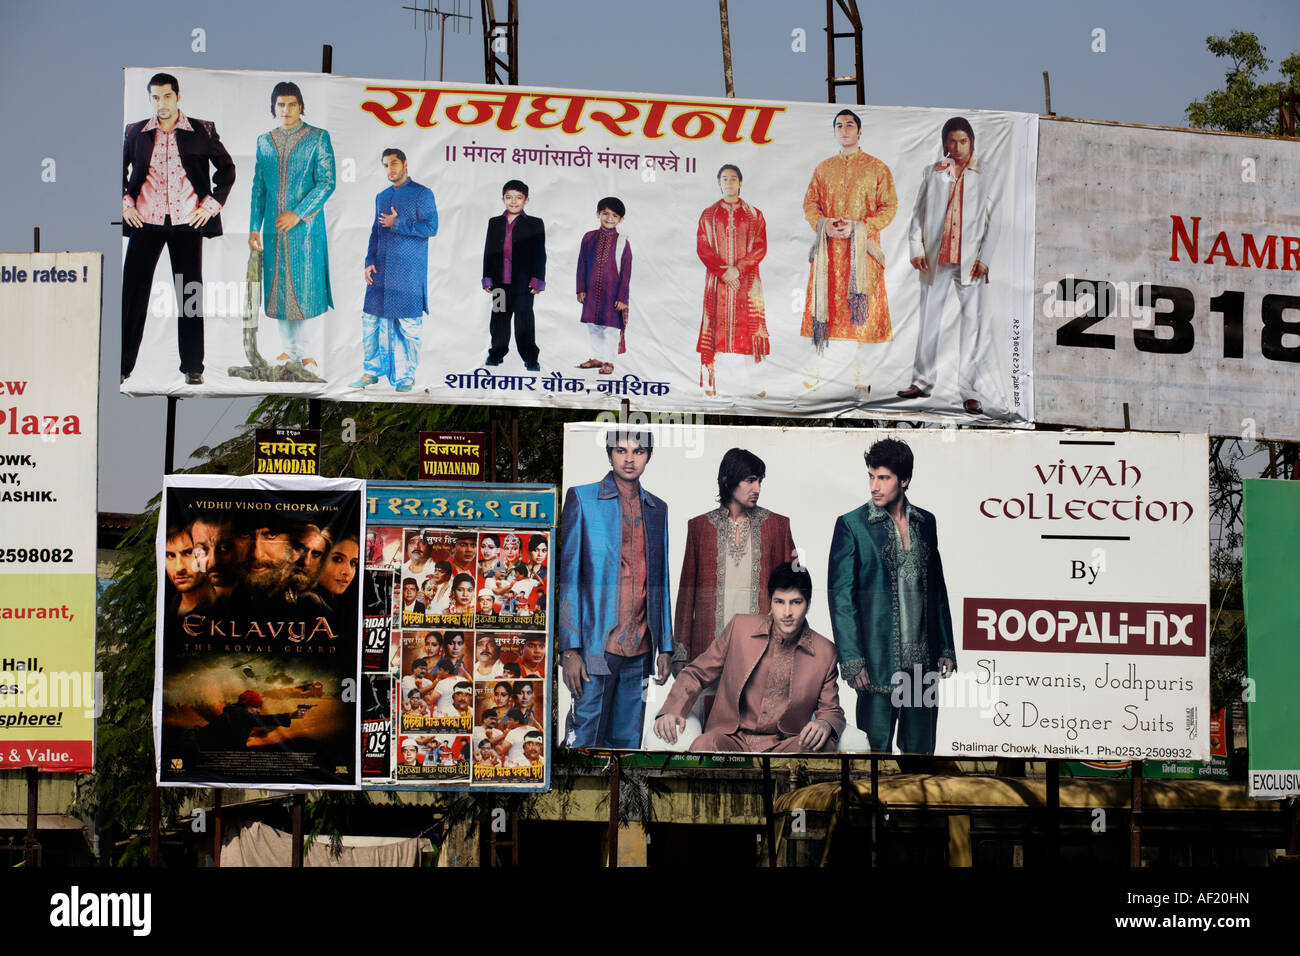 Anuncios vallas publicitarias la ropa masculina tradicional India y modas modernas, Nasik, India Fotografía de stock Alamy